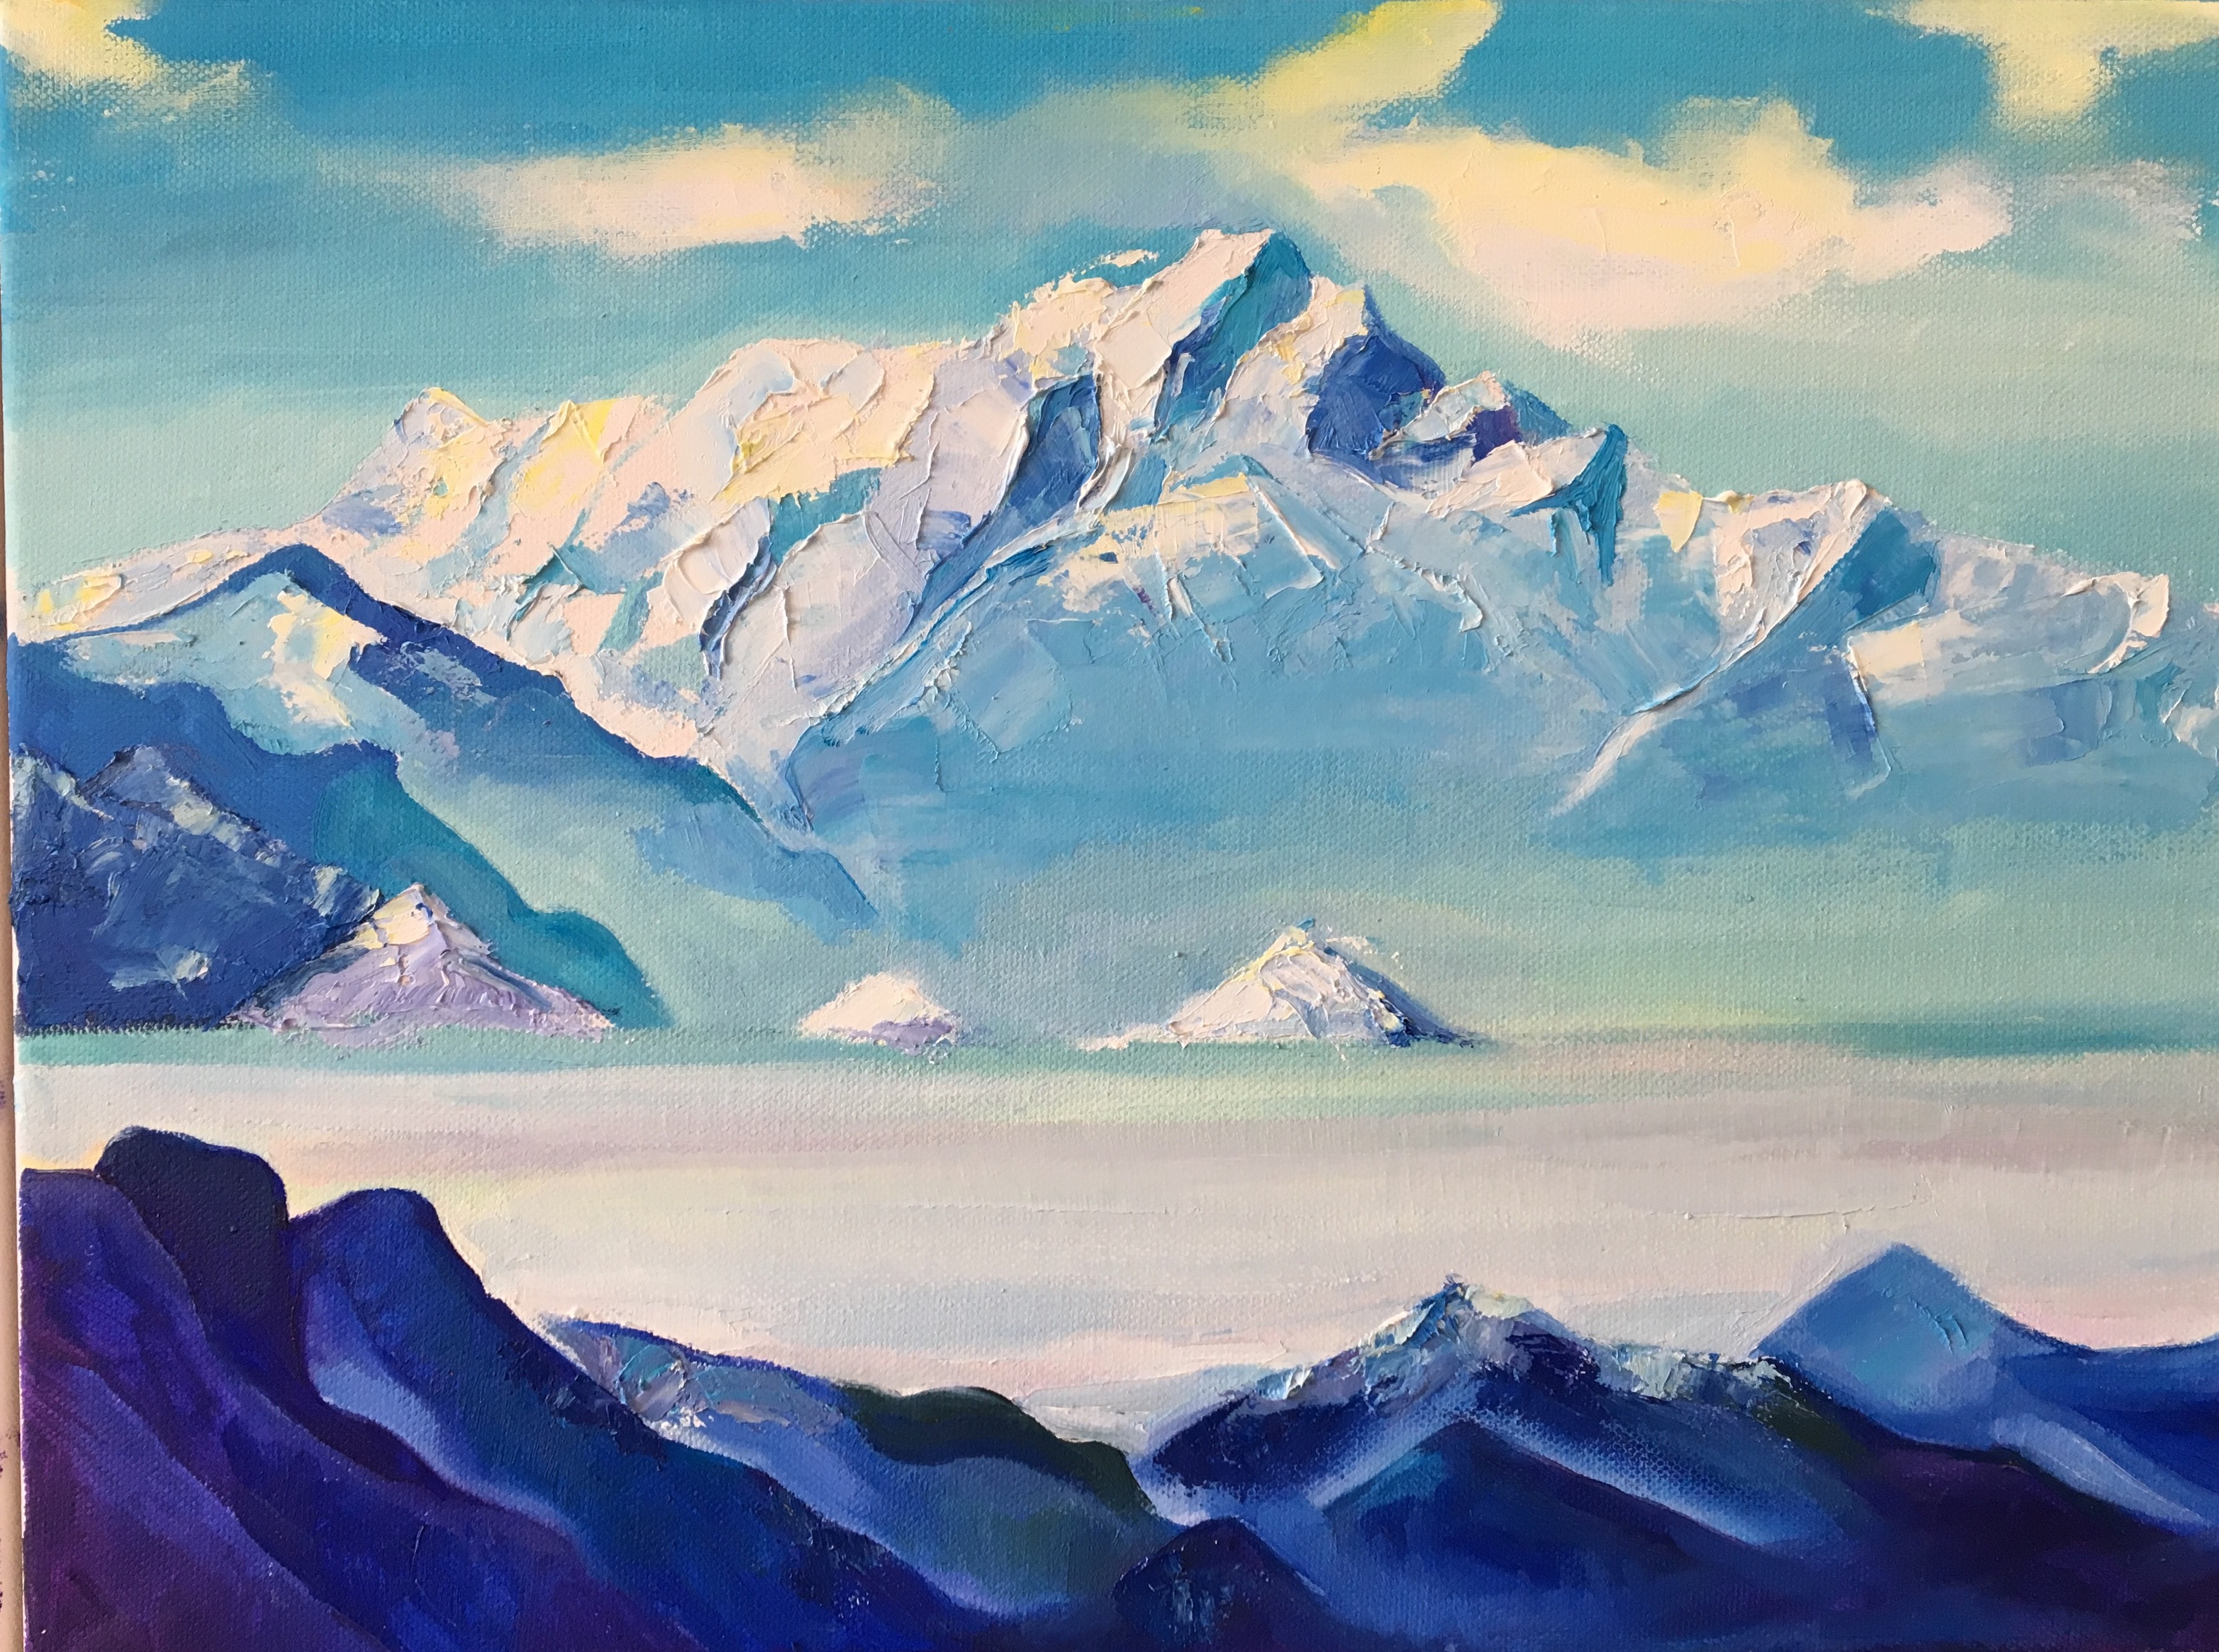 Etude d'après Roerich, Impression sur les montagnes bleues